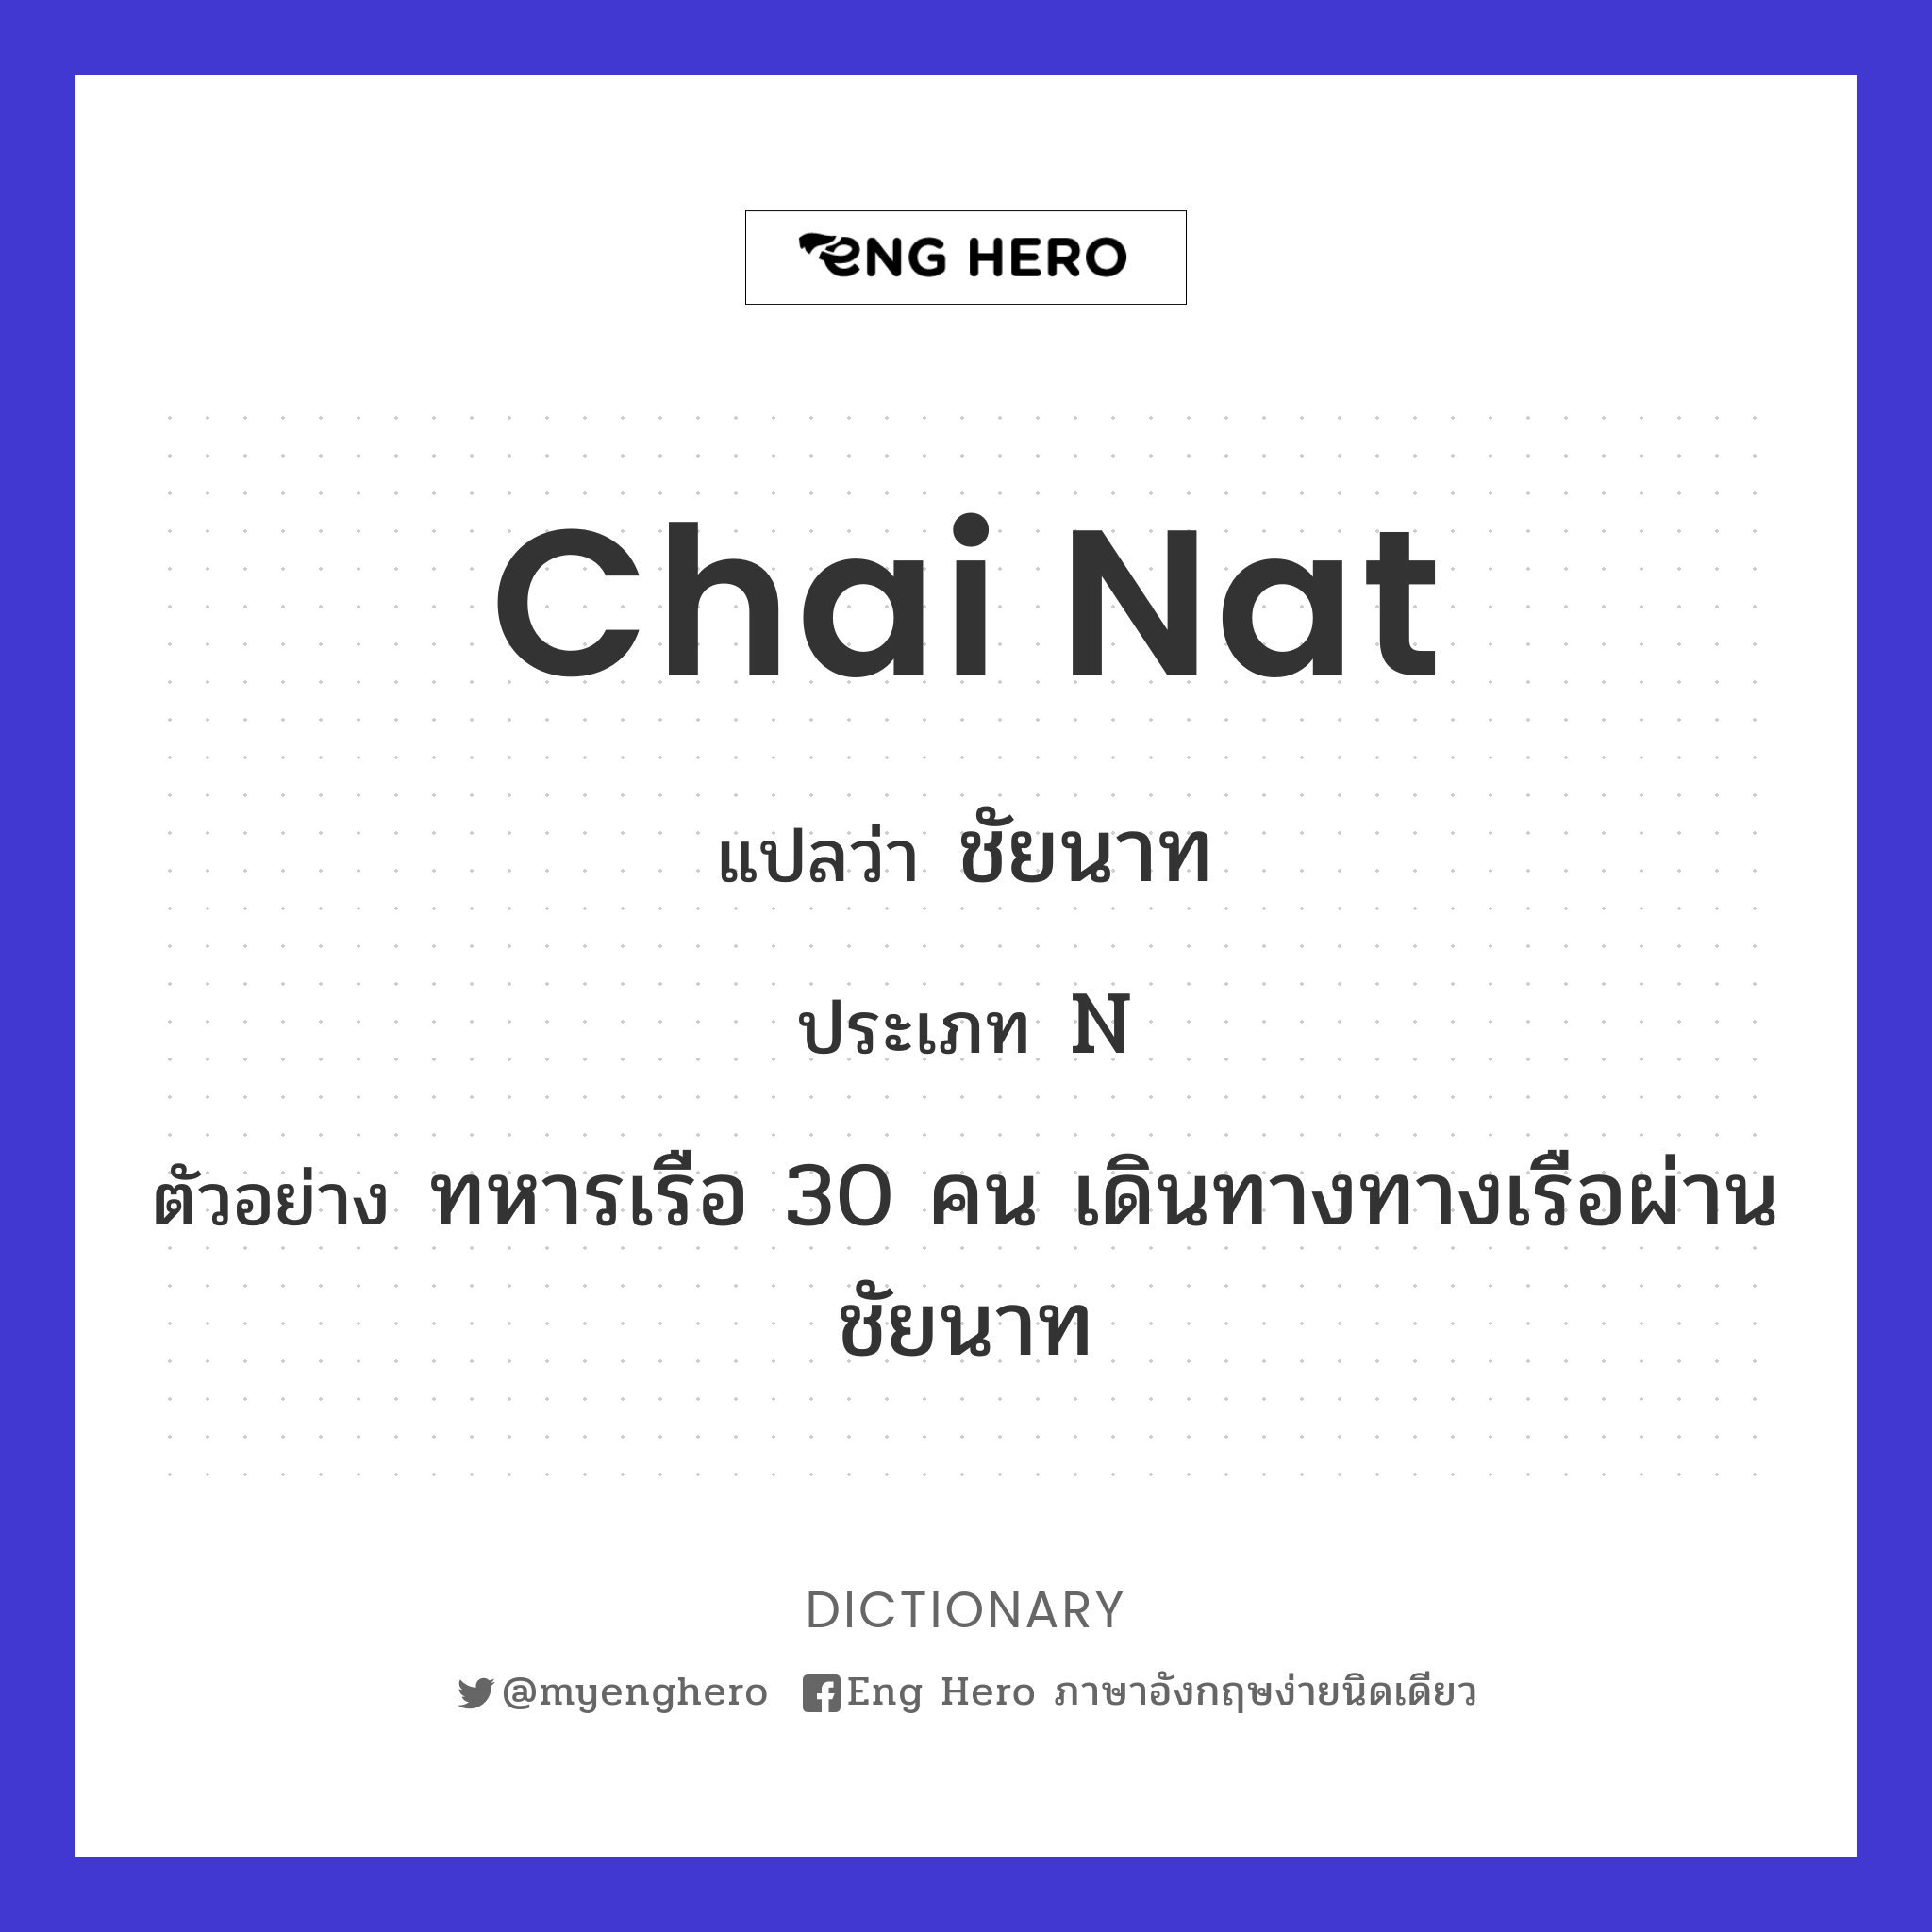 Chai Nat